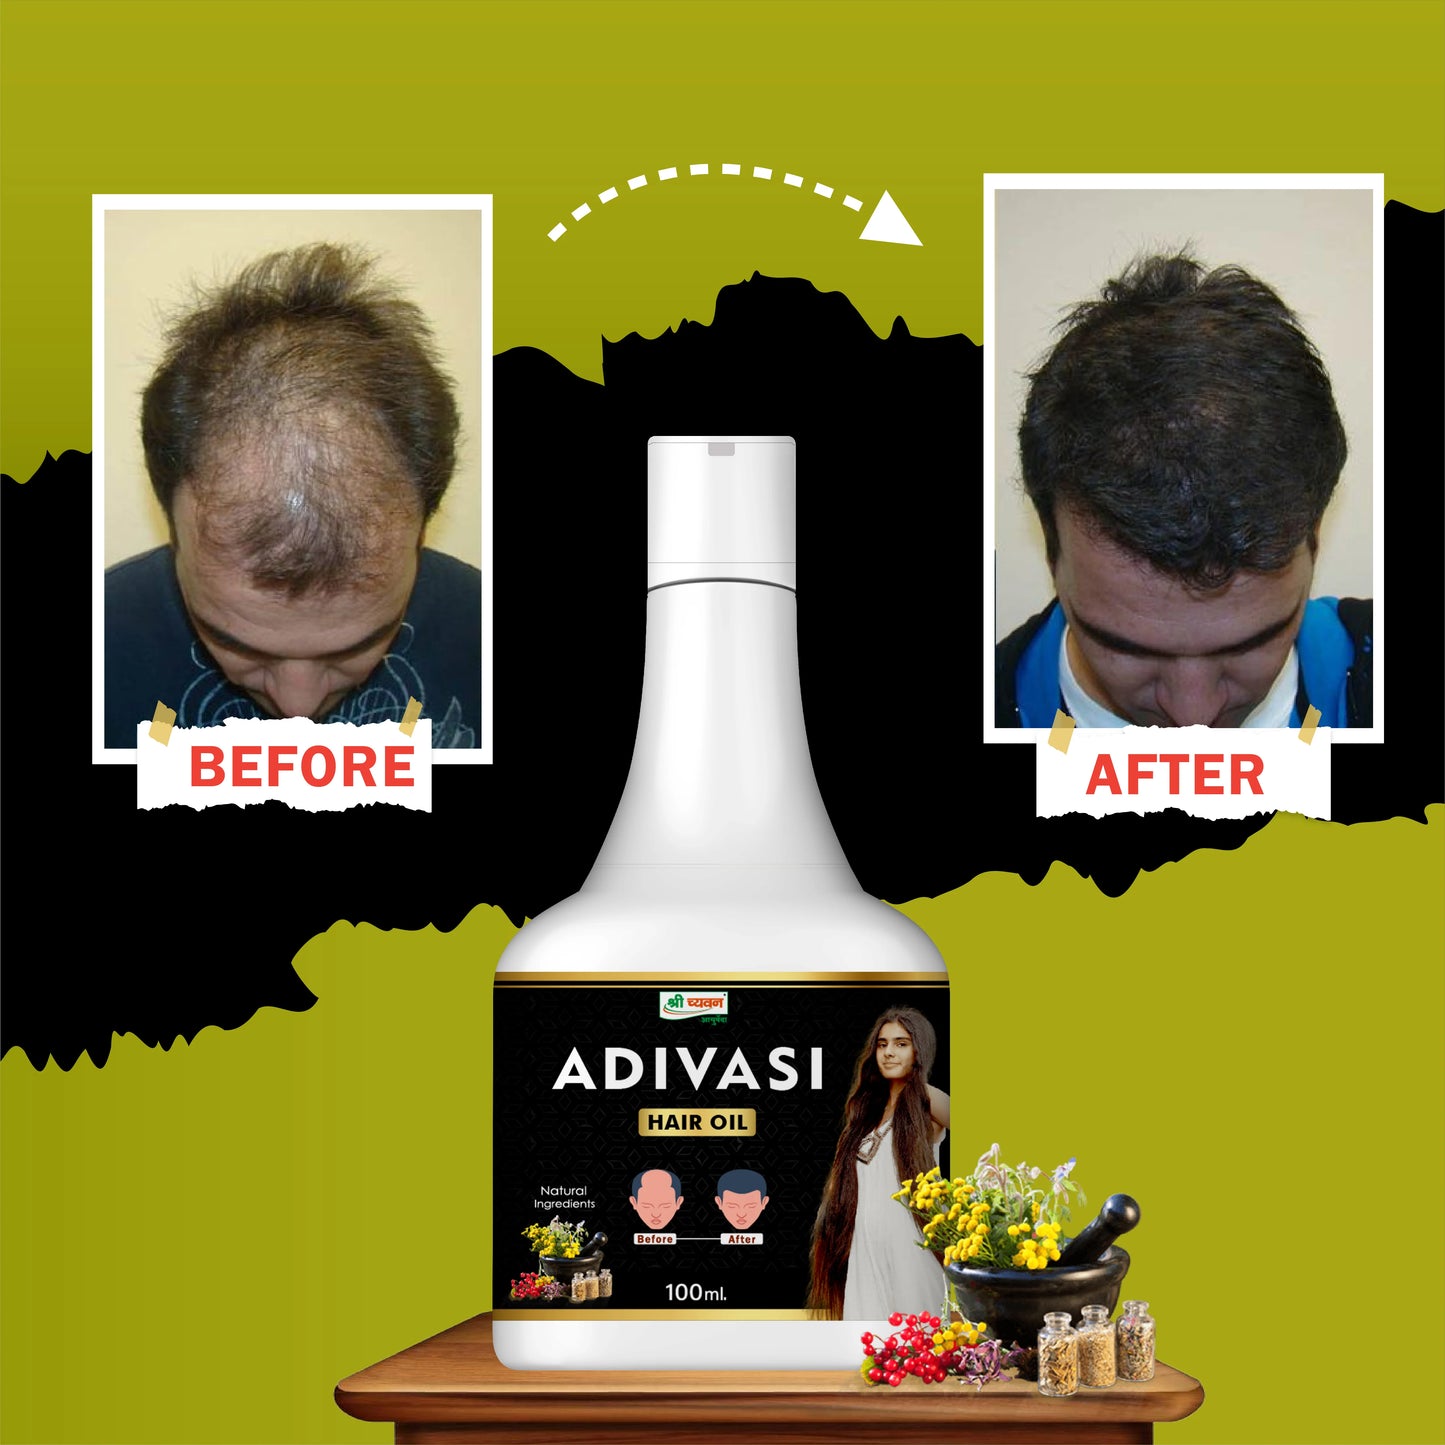 adivasi hair oil for hair brightness